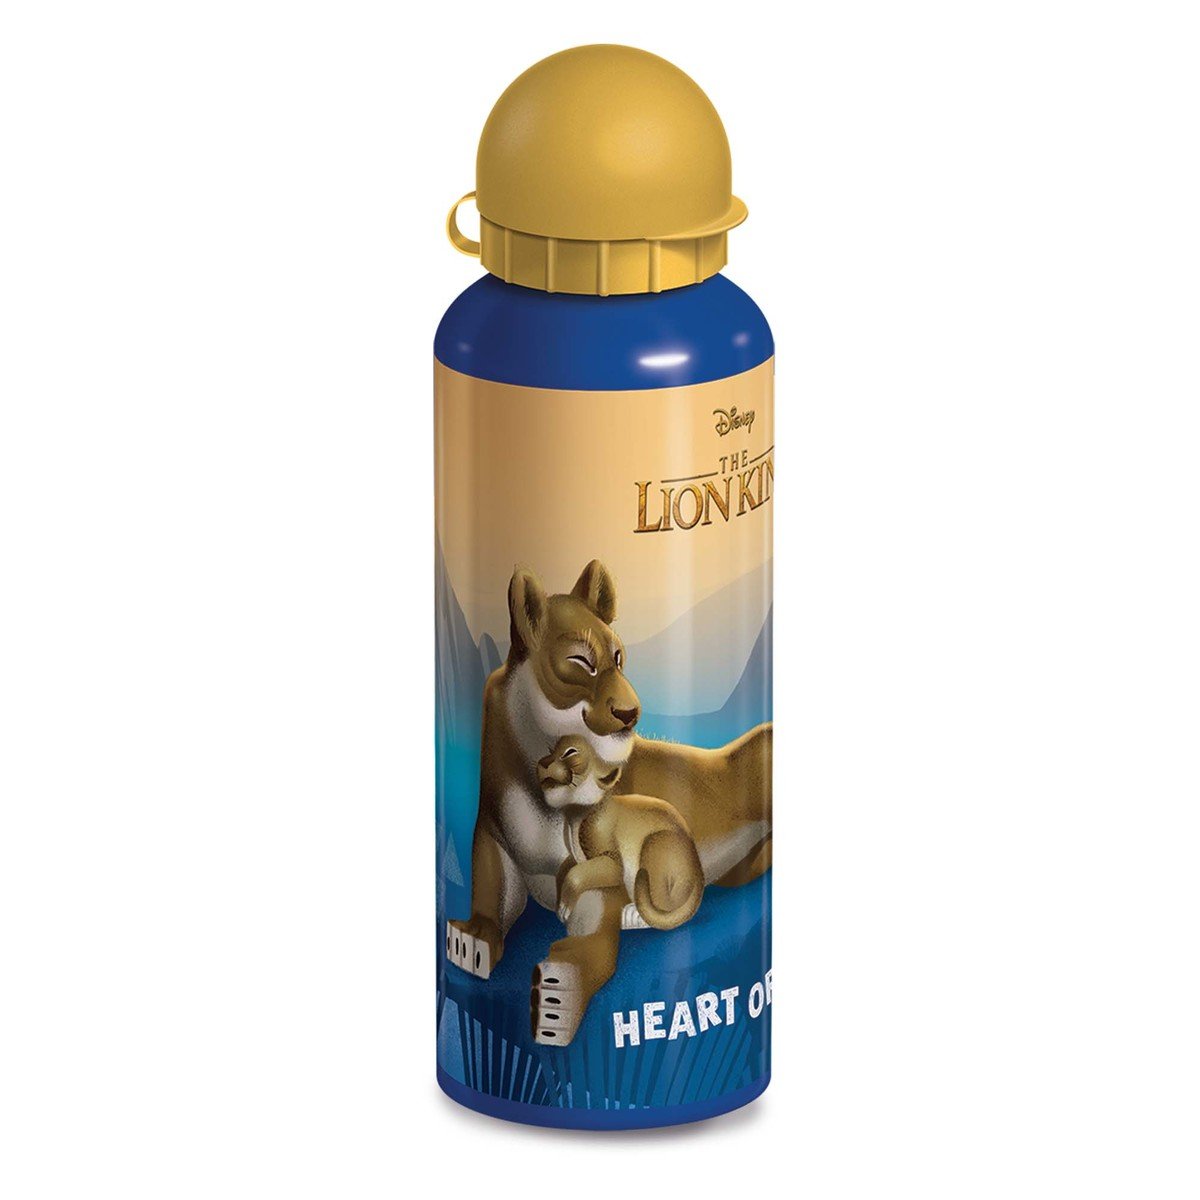 Lion King Water Bottle 112-15-0919